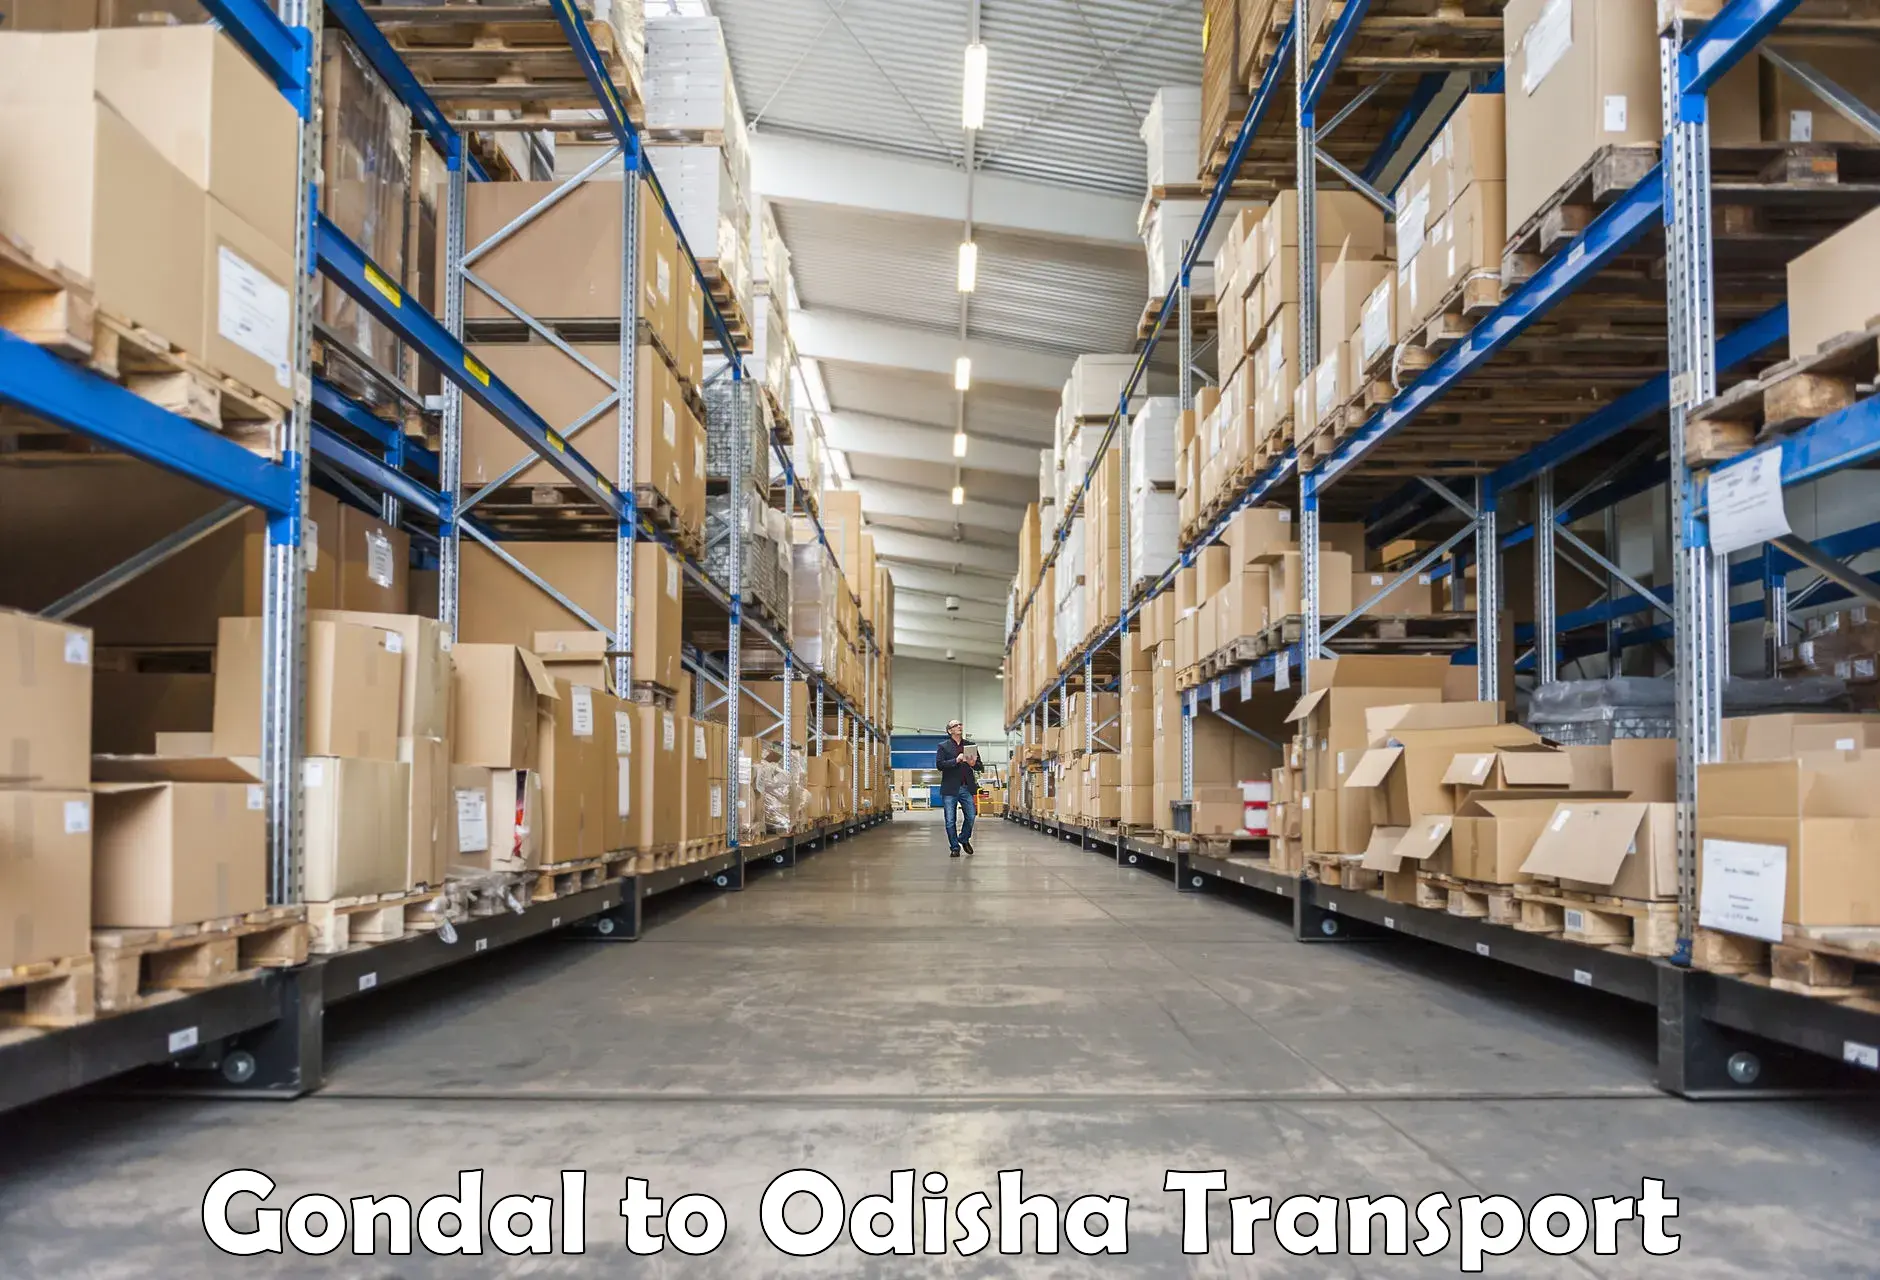 Nearest transport service Gondal to Saintala